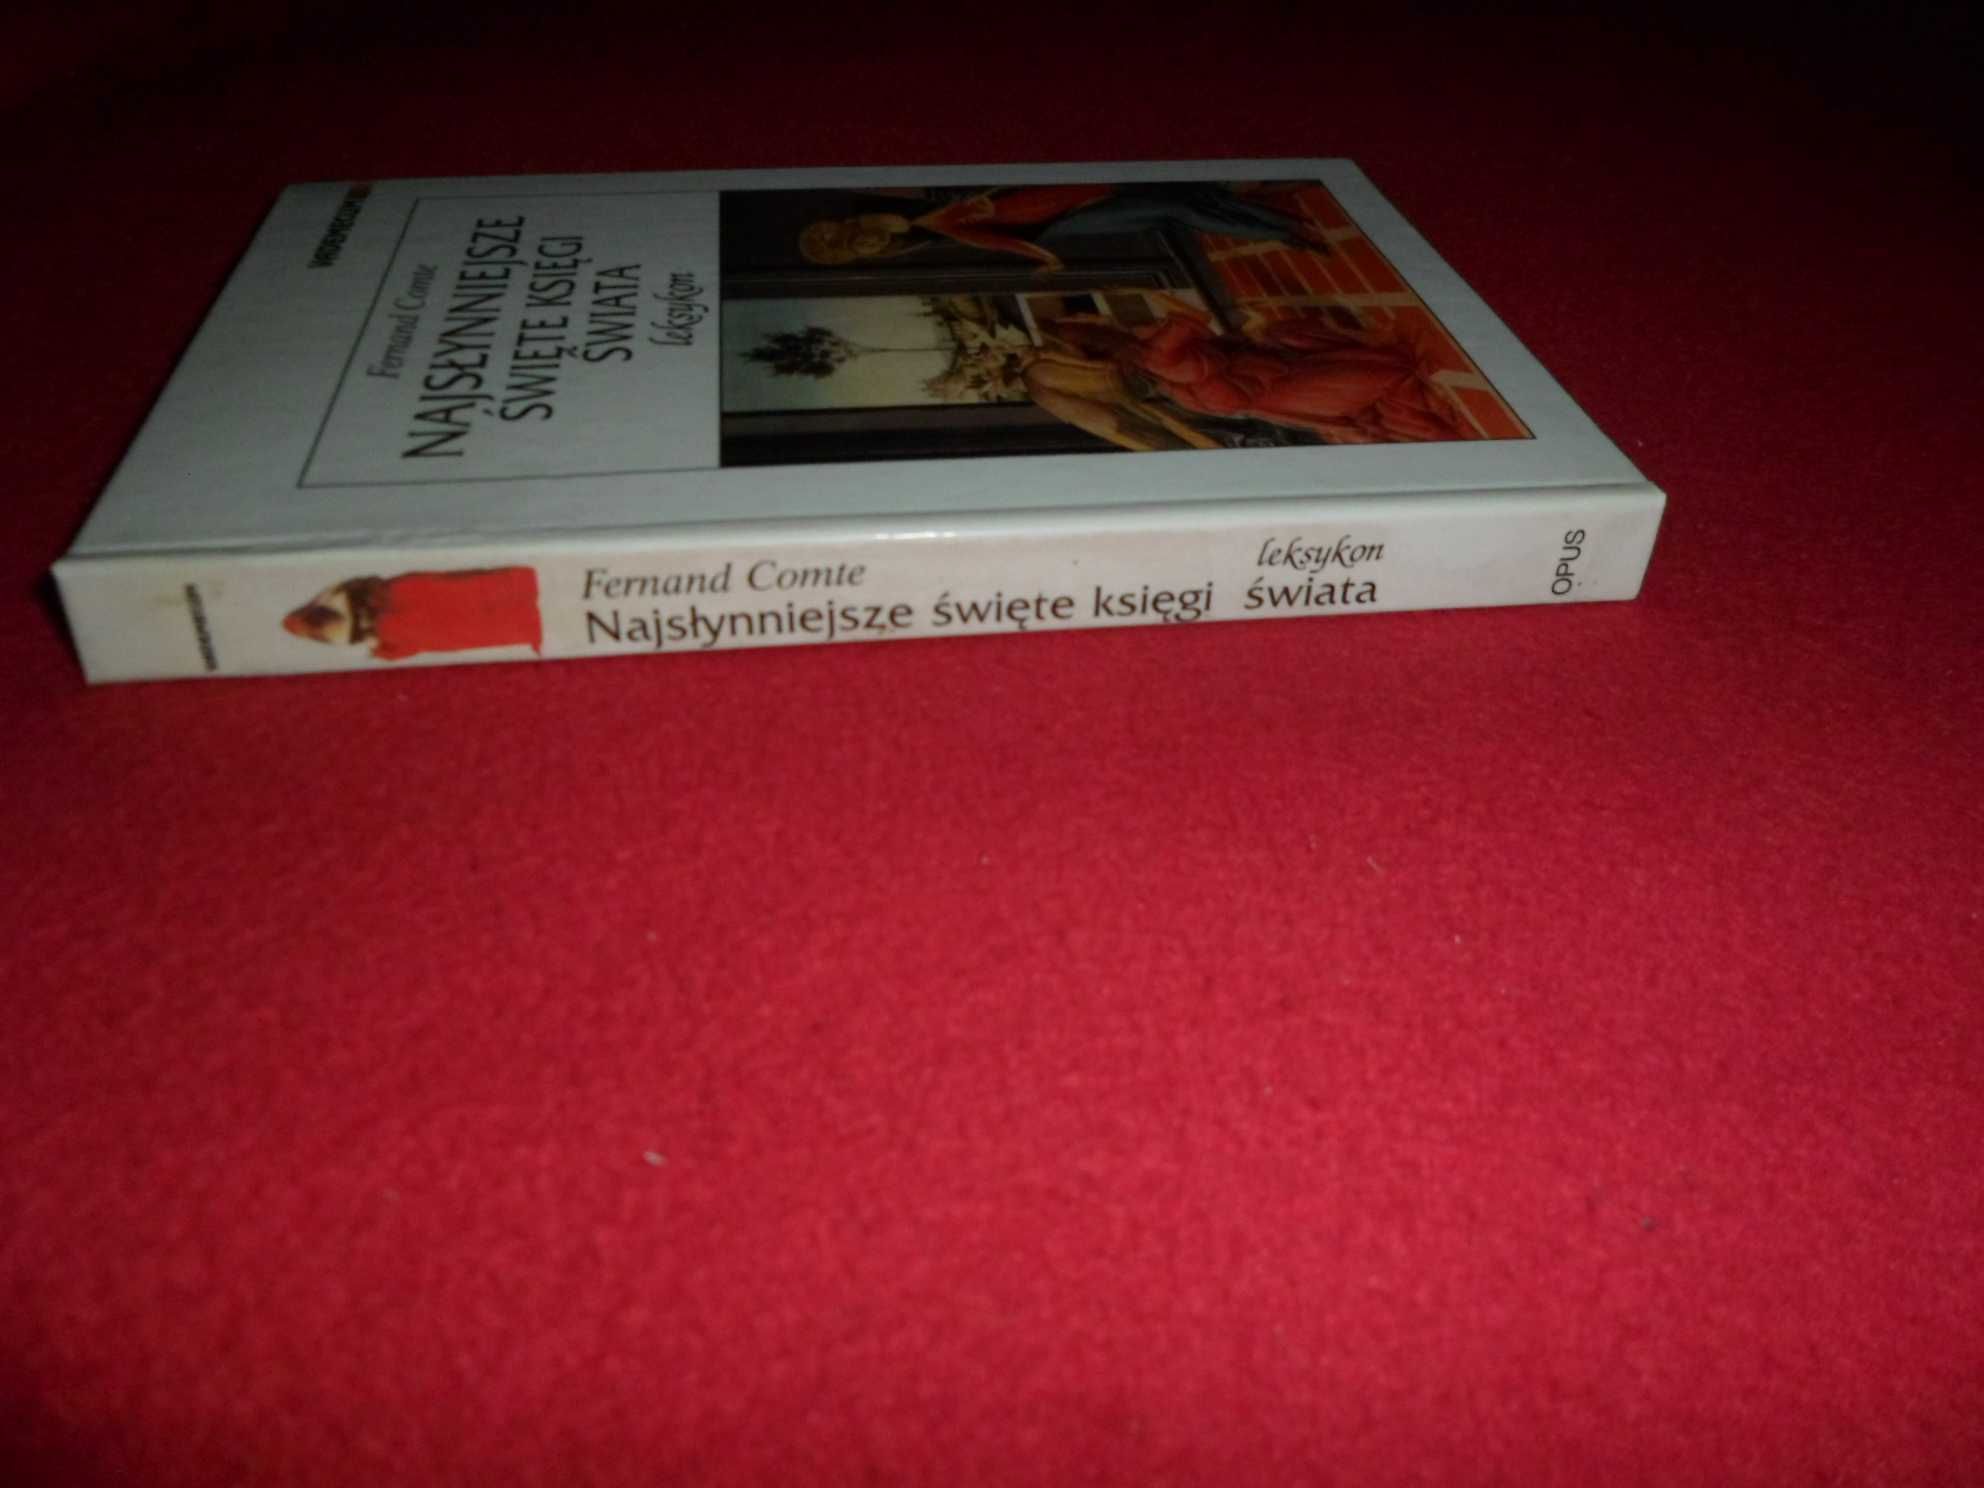 Najsłynniejsze święte księgi świata Leksykon - Fernand Comte